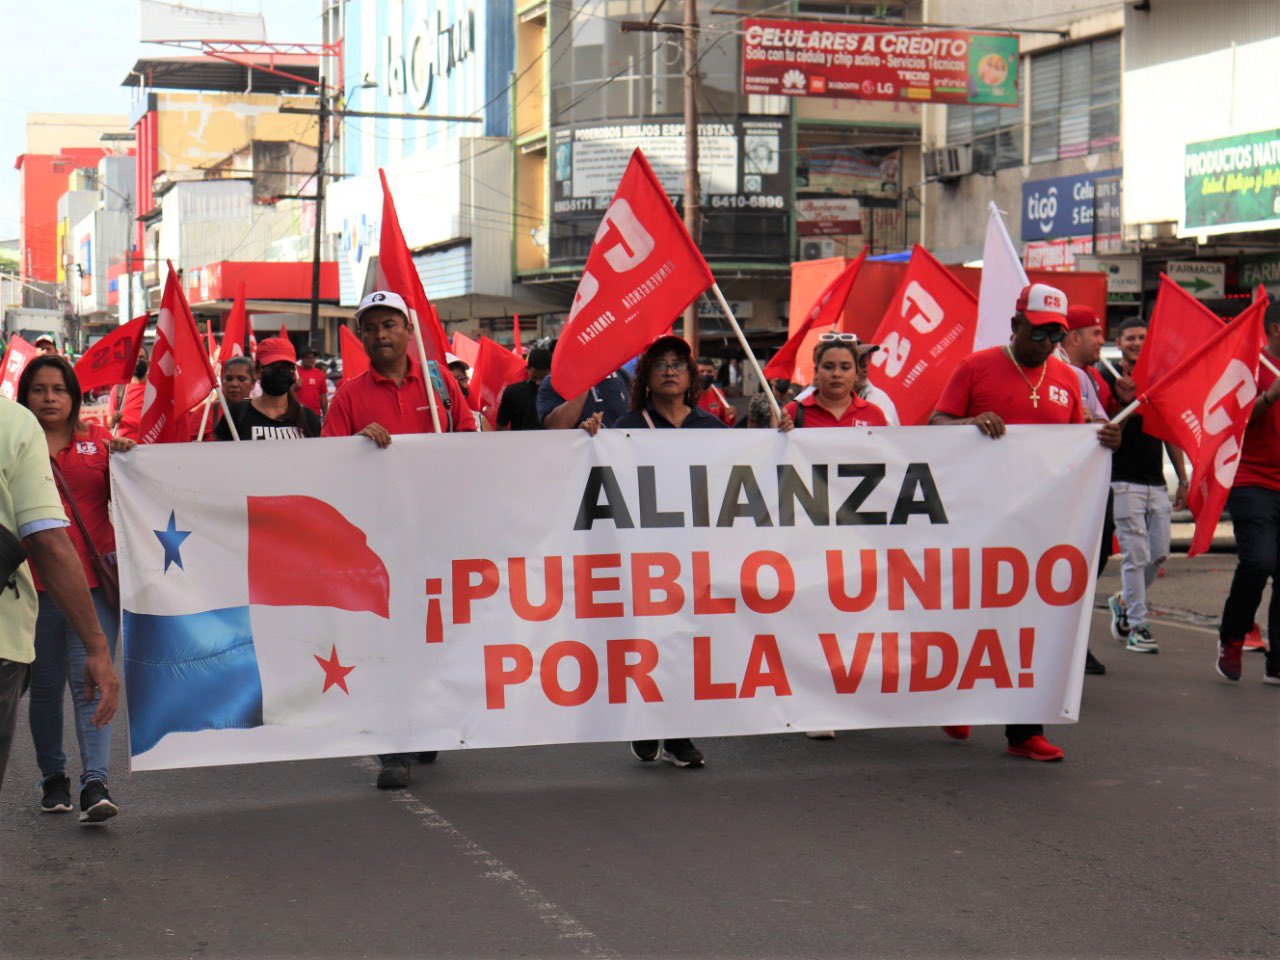 La Alianza Pueblo Unido por la Vida exige poner fin a la corrupción que impera en el país centroamericano por parte de oligarcas y Gobierno.